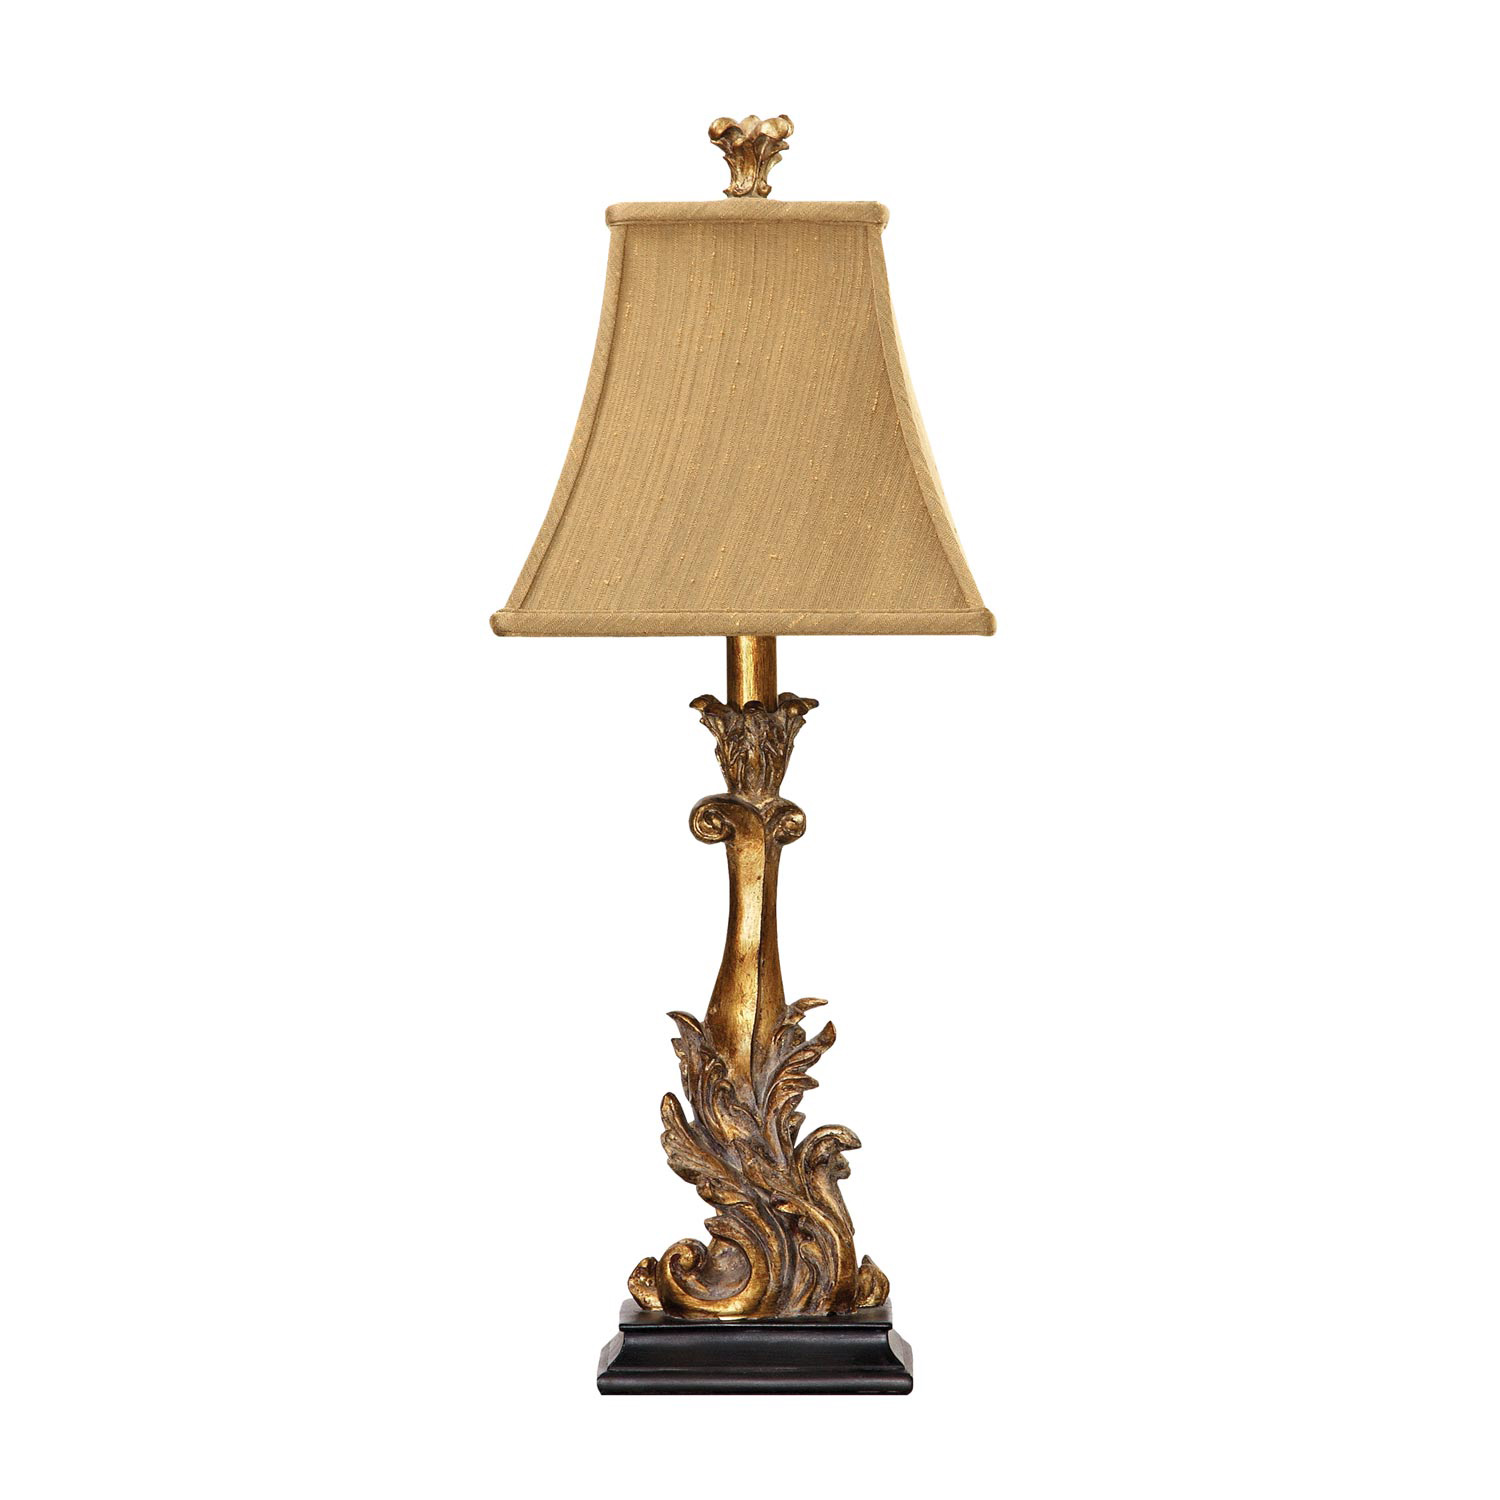 Elk Lighting 91-828 Acanthus Column Table Lamp - Gold Leaf / Black